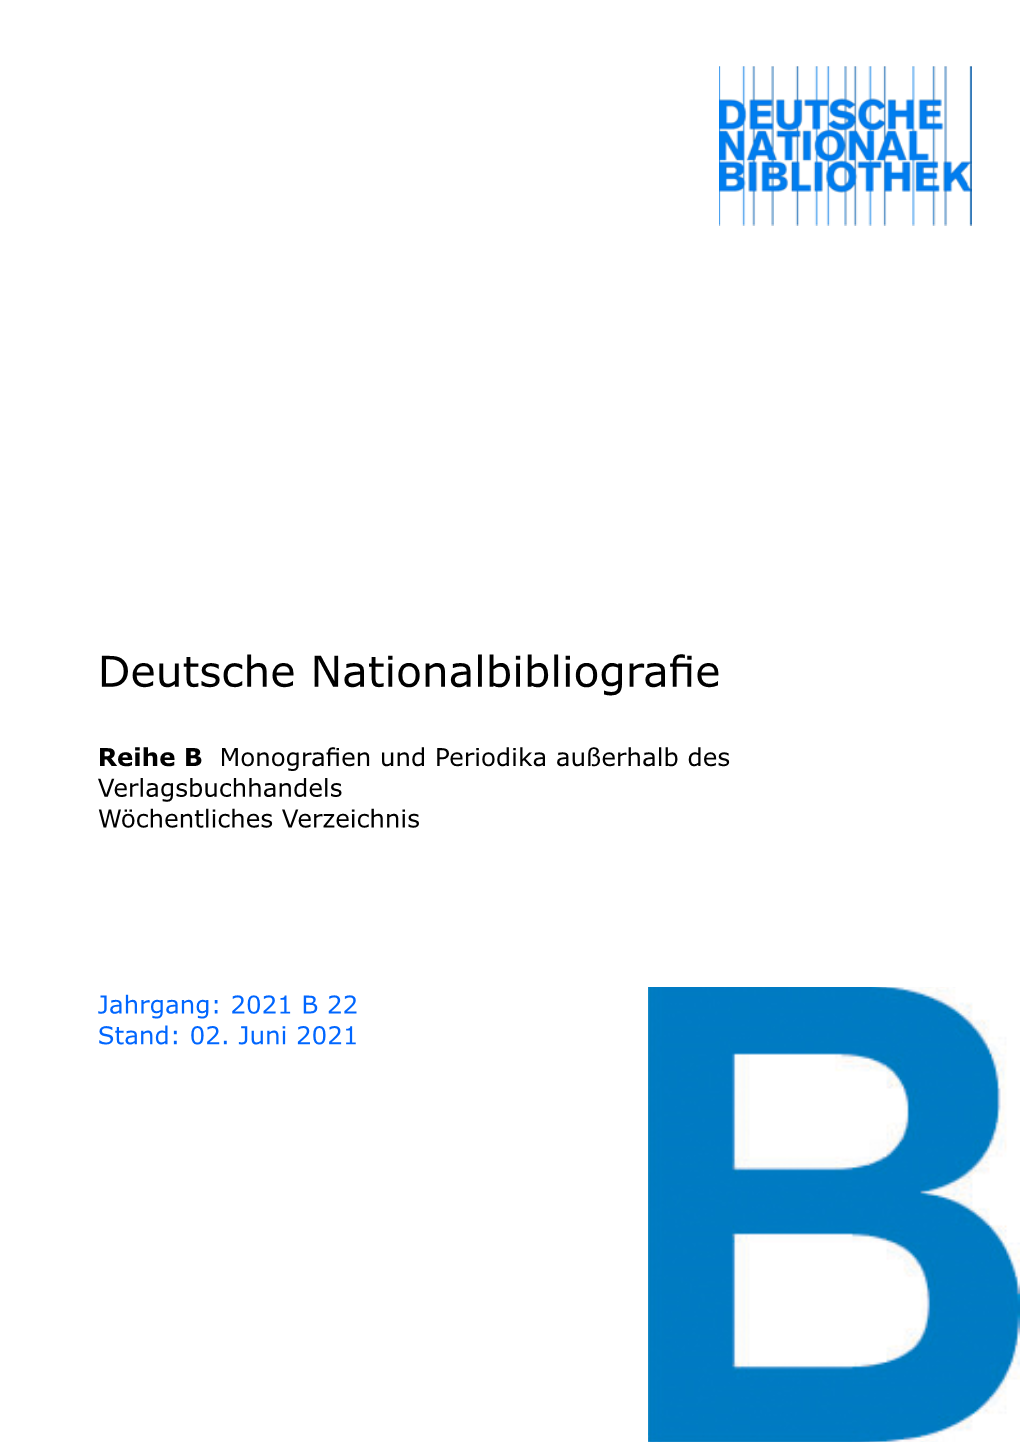 Deutsche Nationalbibliografie 2021 B 22